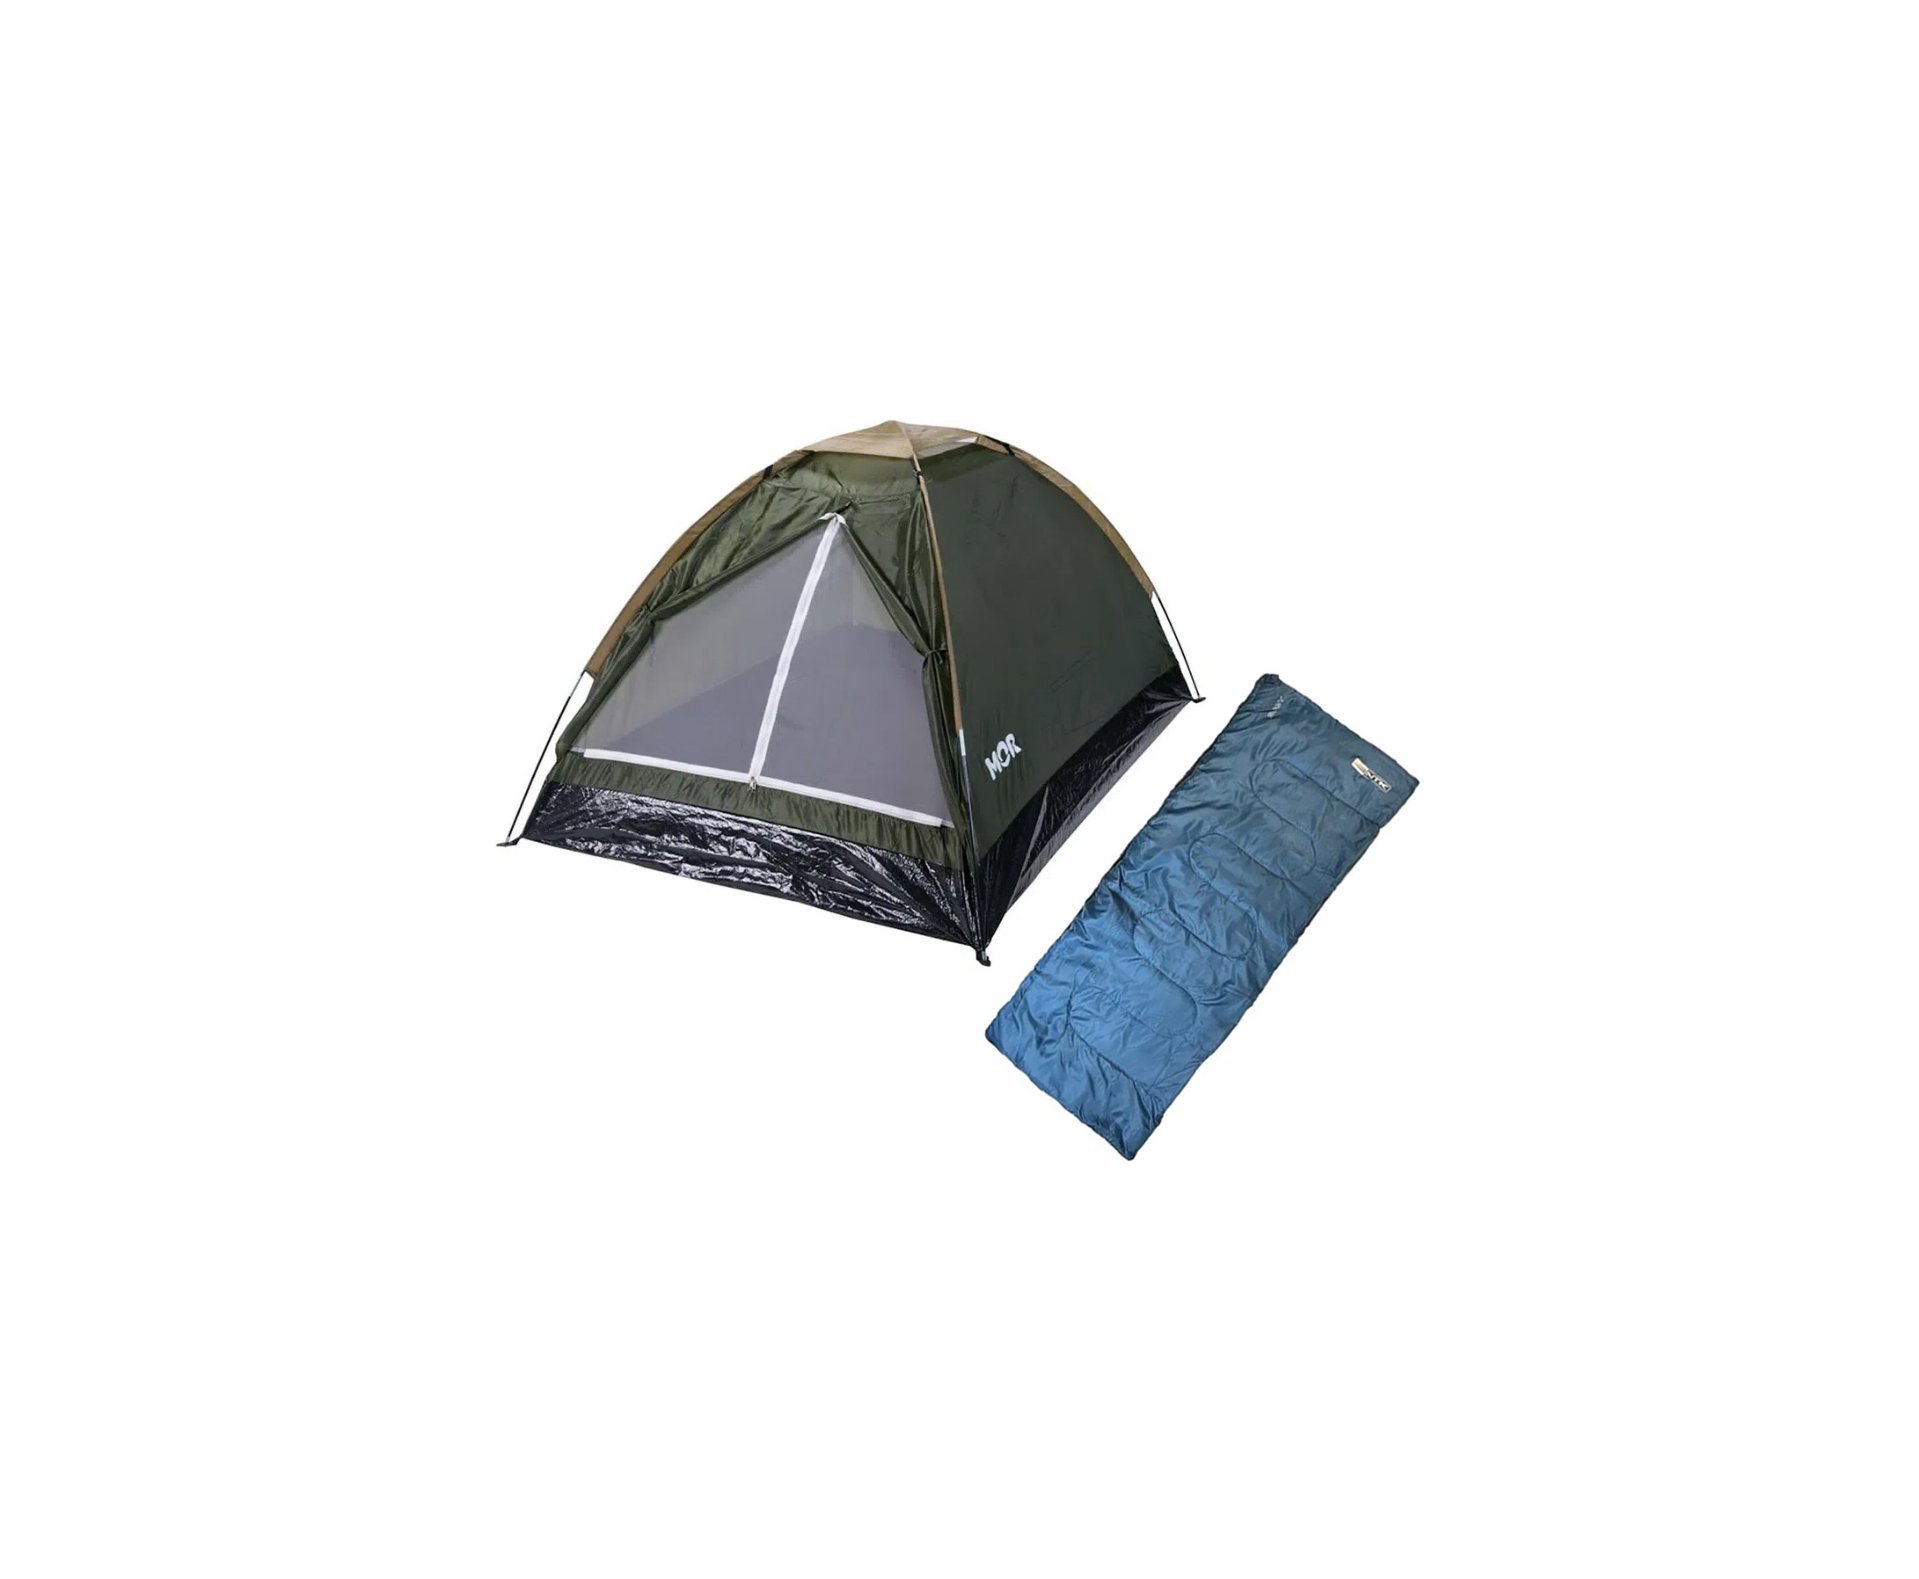 Saco dormir Bugy solteiro Camping NKT 8°C e 15°C Preto AZUL + Barraca Iglu 2 Pessoas Verde